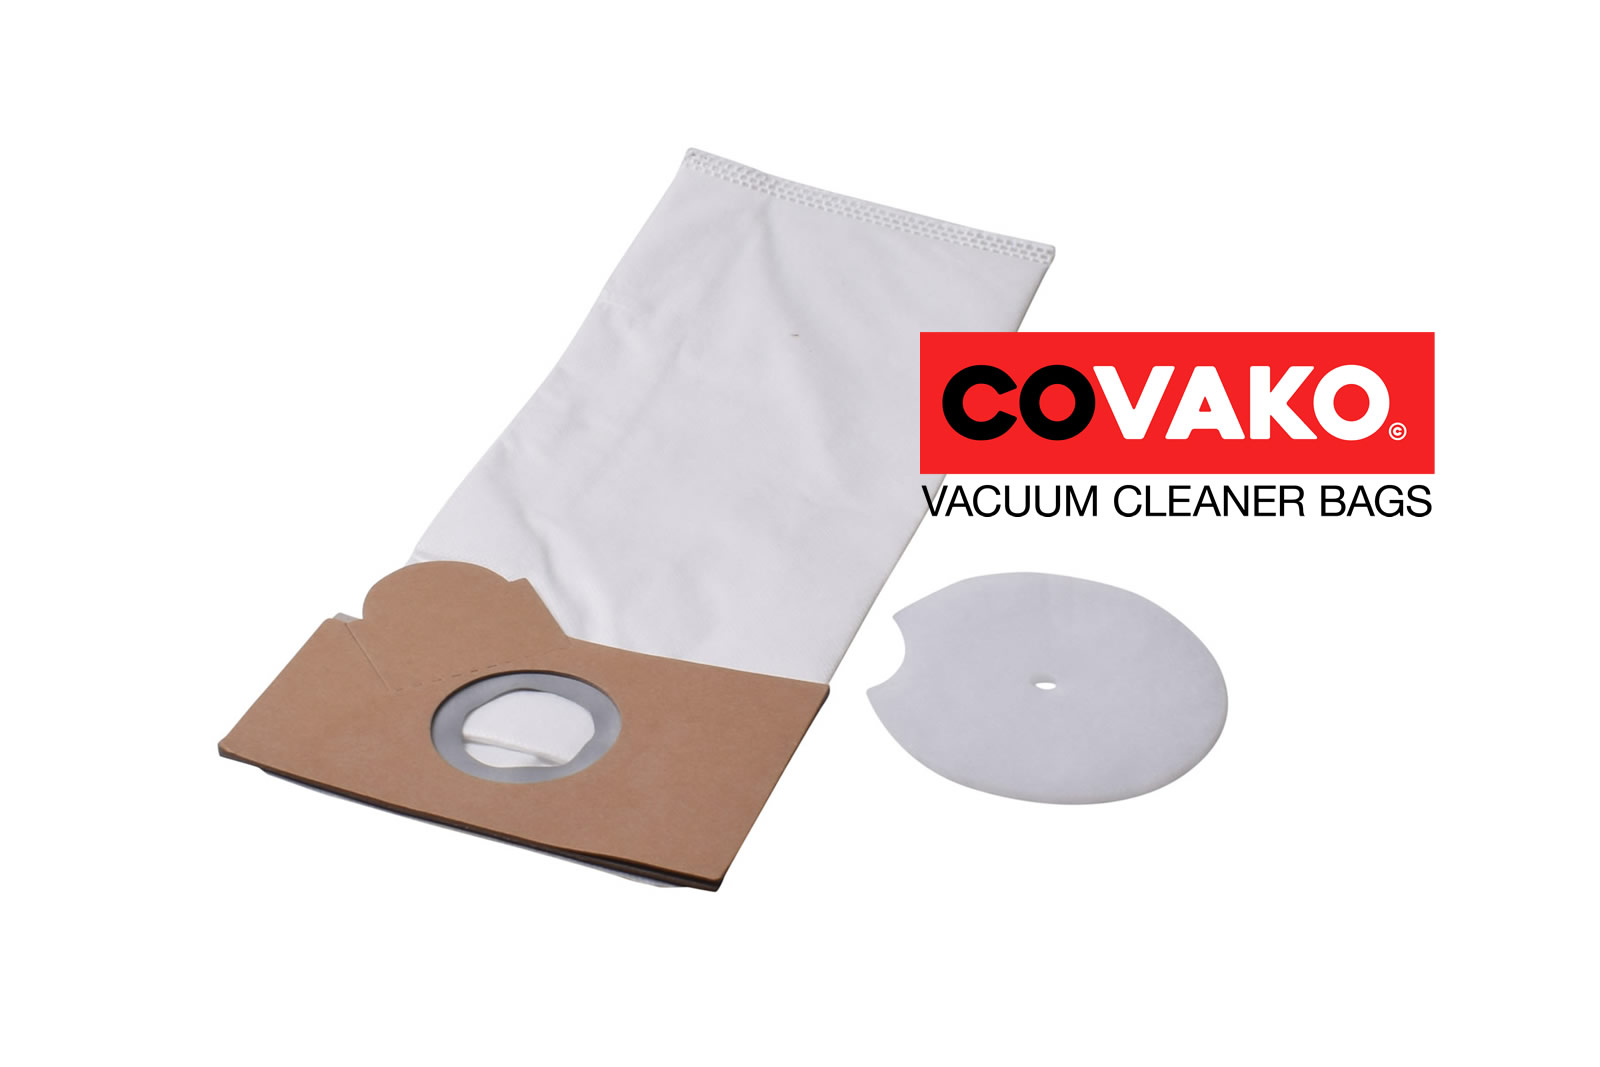 Fakir Combi 17-36 / Synthesis - Fakir vacuum cleaner bags